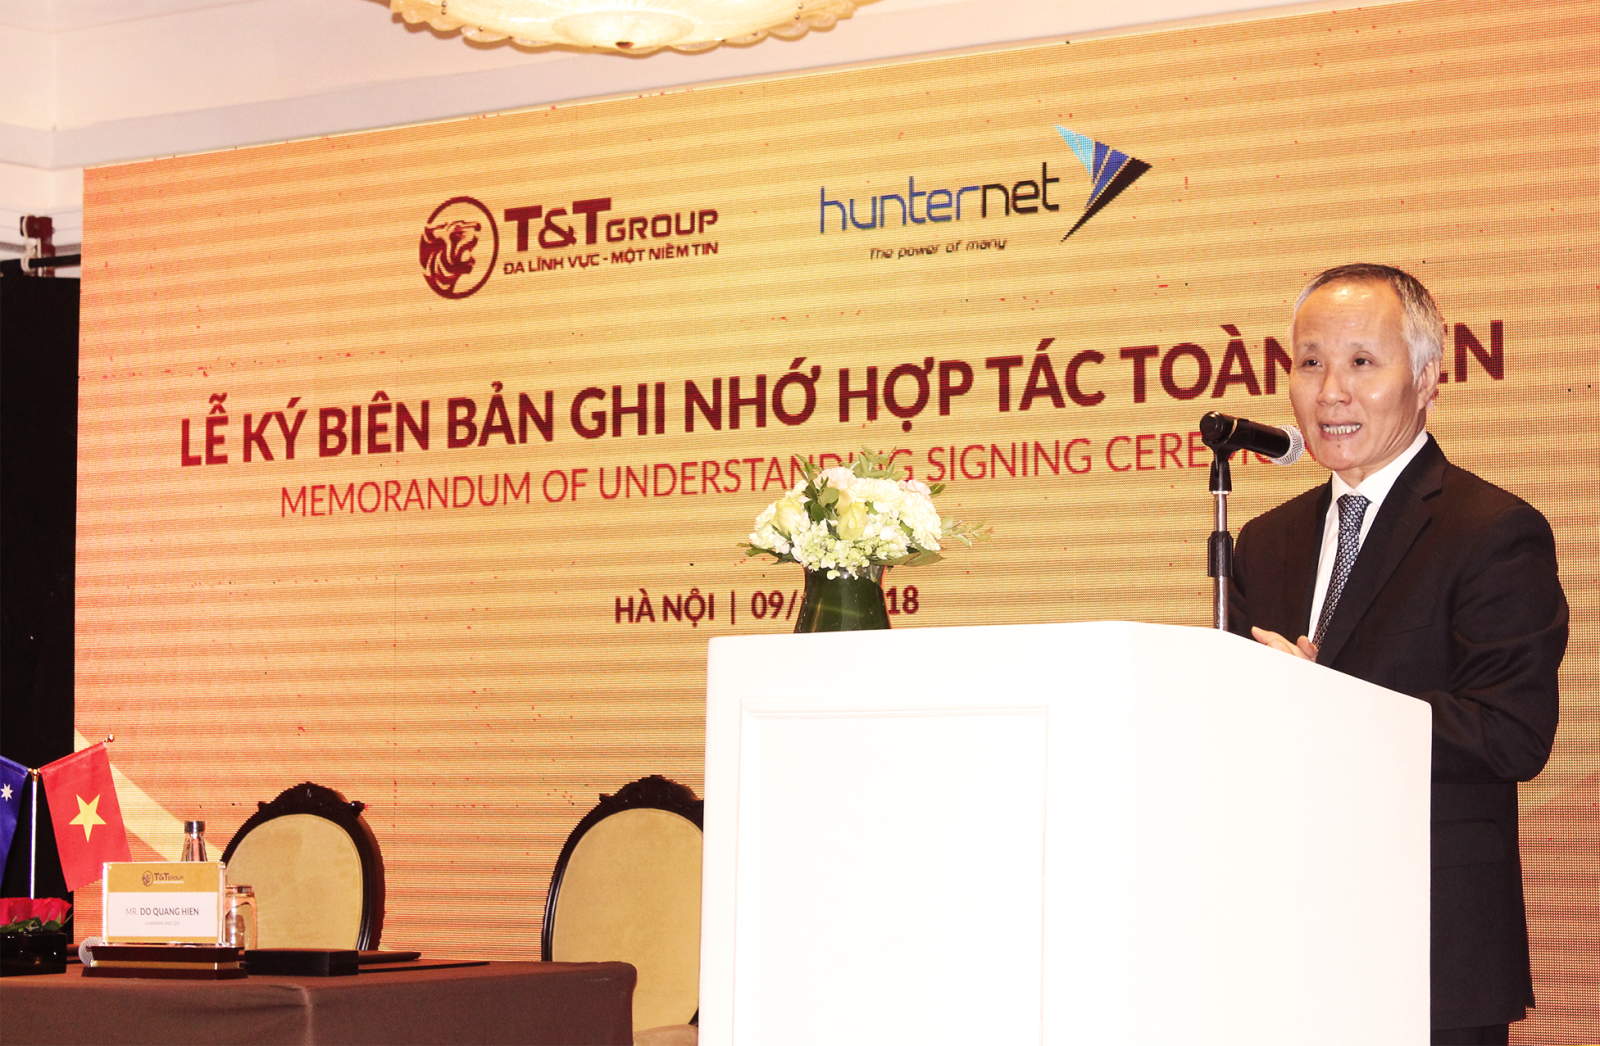 Thứ trưởng Bộ Công thương Trần Quốc Khánh phát biểu tại Lễ ký kết Biên bản ghi nhớ hợp tác toàn diện giữa Tập đoàn T&T Group và Hiệp hội Doanh nghiệp HunterNet.